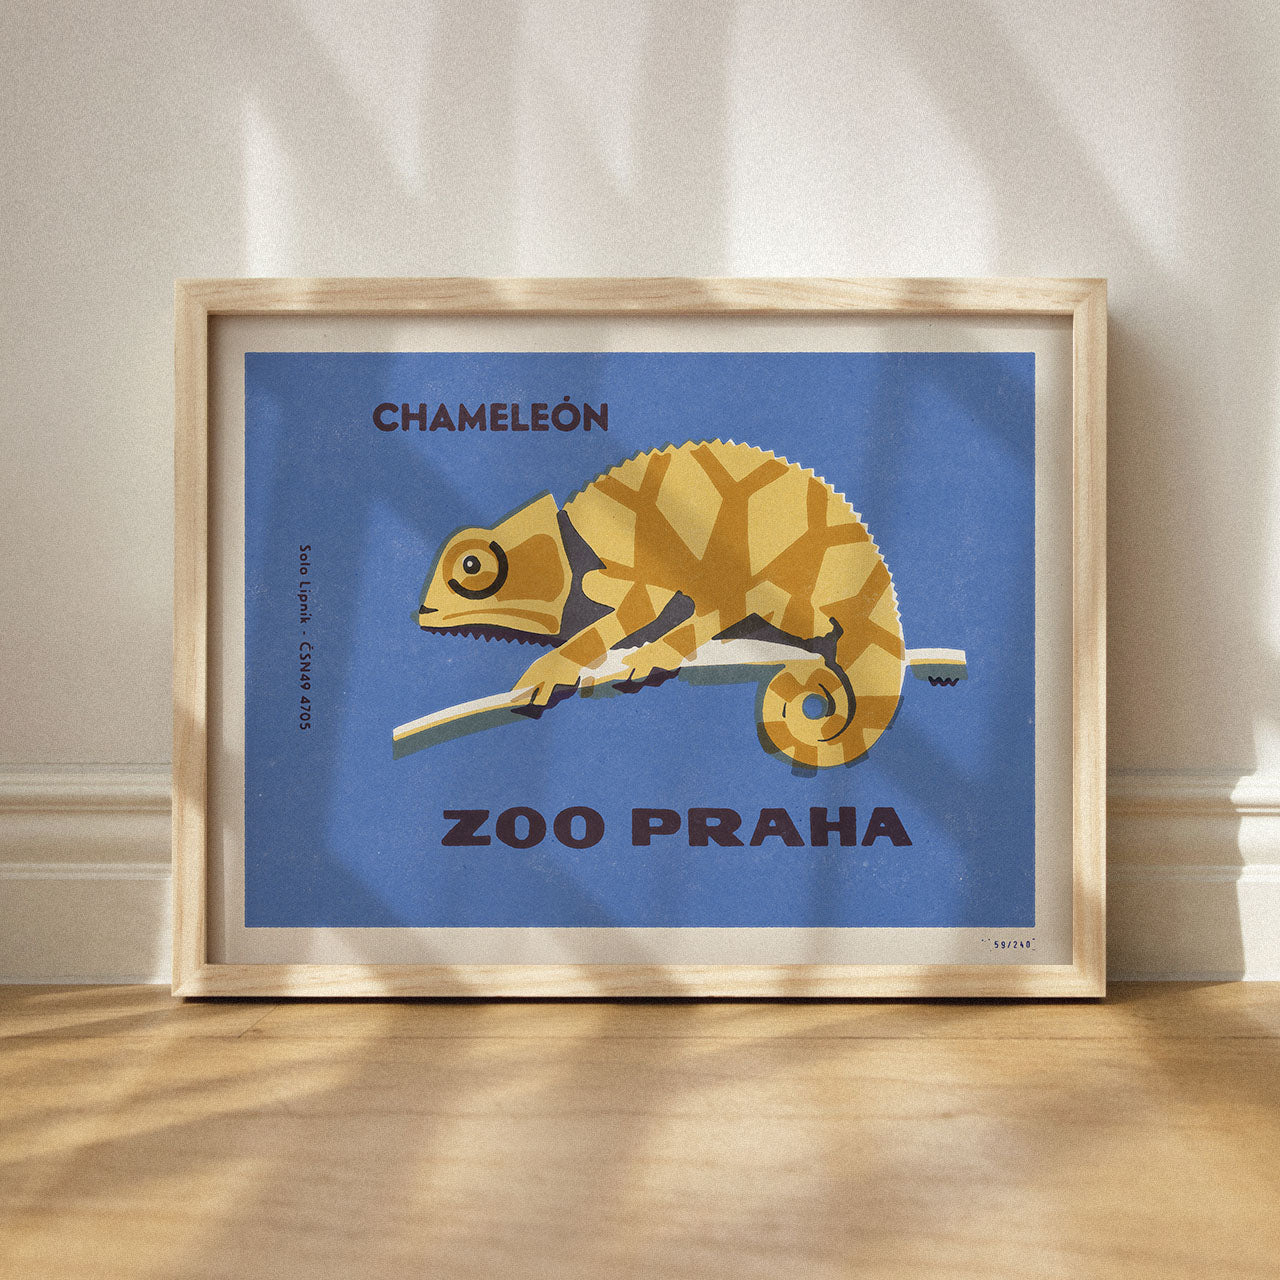 Prague Zoo - Chameleon - Poster 40x30 cm 